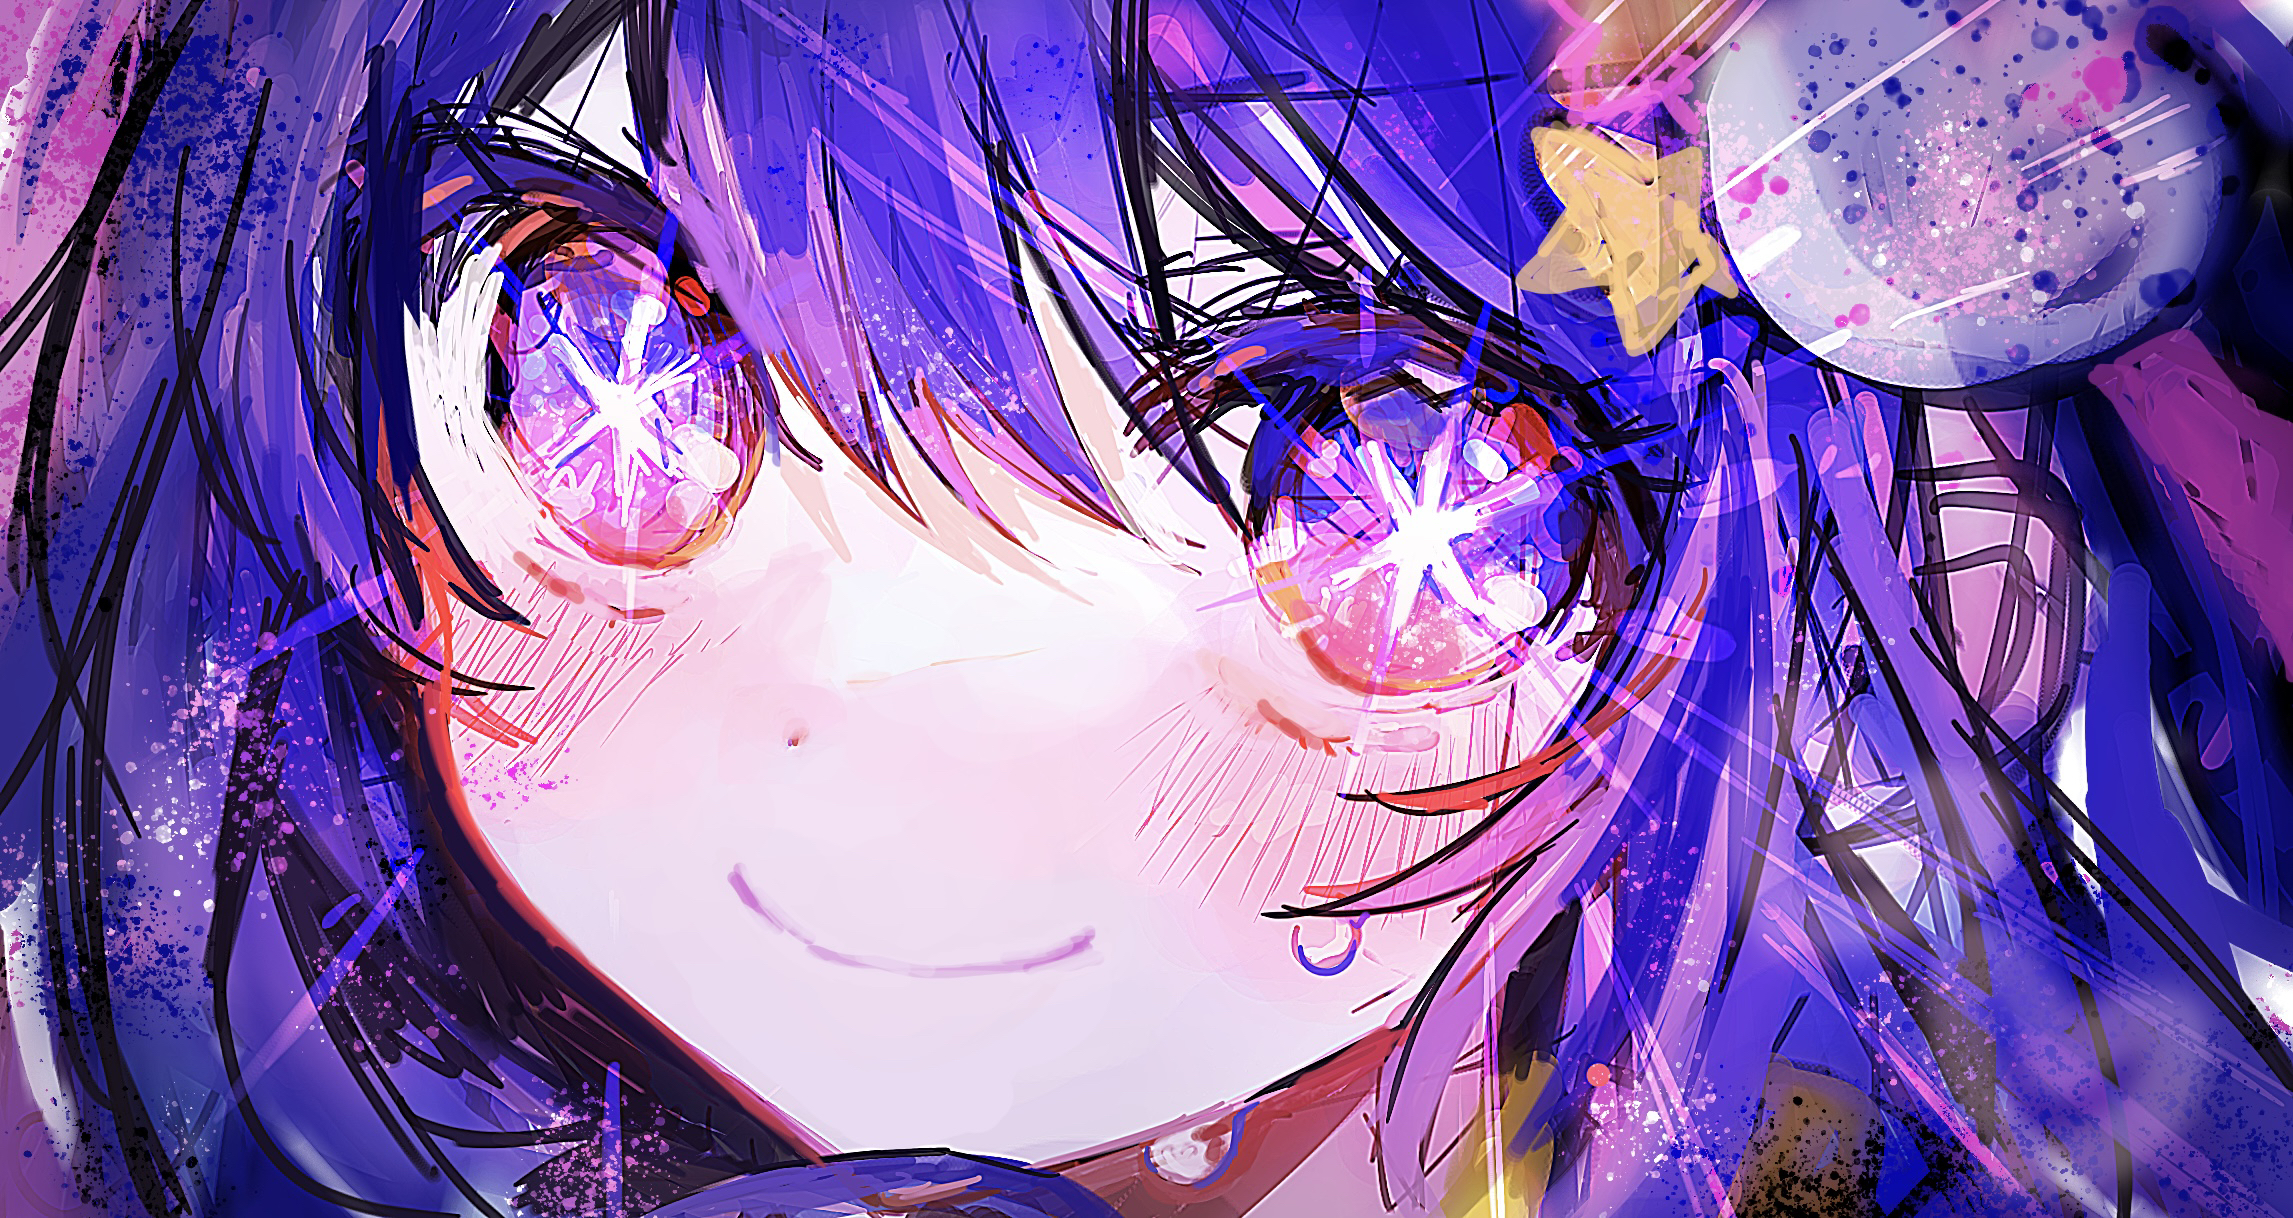 Anime 2293x1218 Pixiv anime face Oshi no Ko star eyes Hoshino Ai smiling looking at viewer anime girls blushing purple hair purple eyes